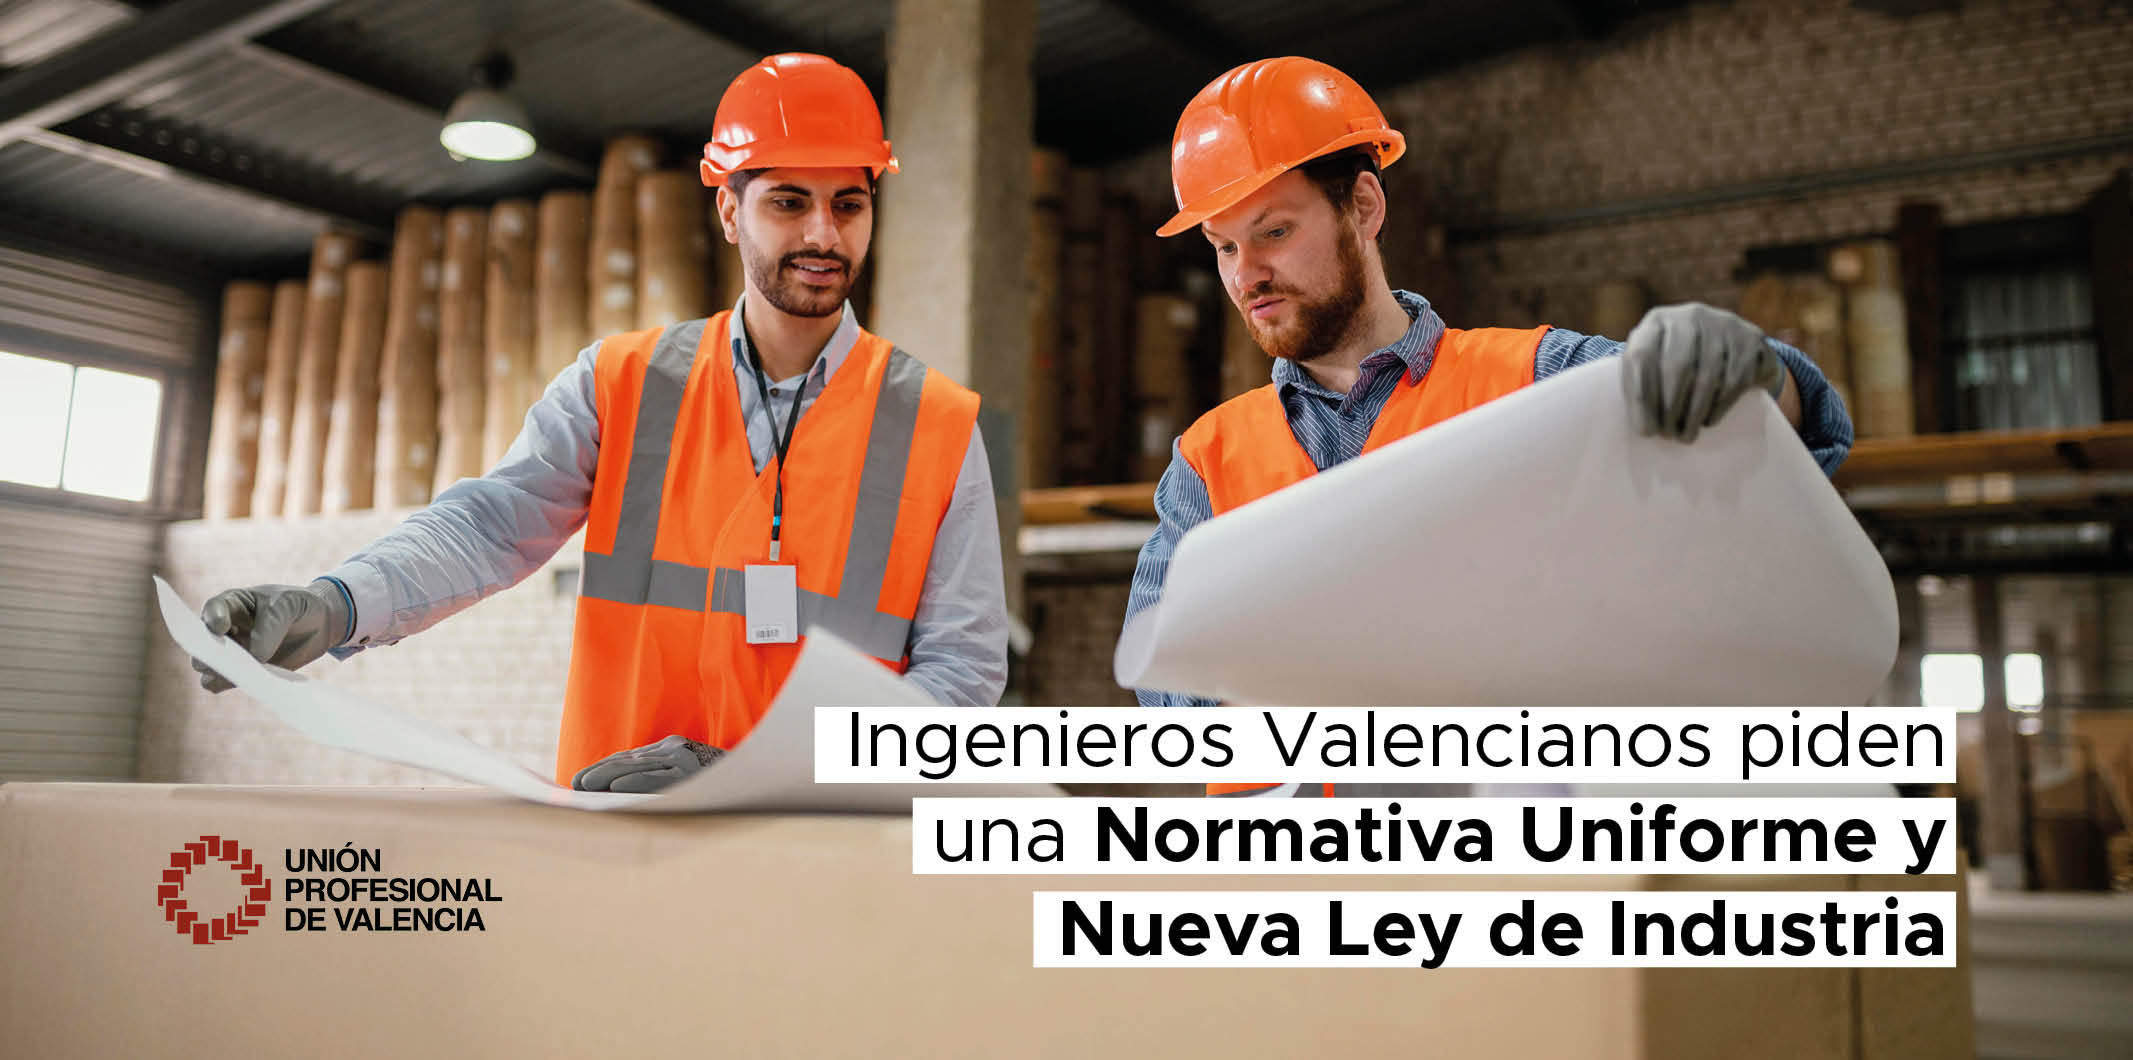 Ingenieros Valencianos Exigen Uniformidad en la Normativa de Seguridad Industrial y Mejora en la Ley de Industria